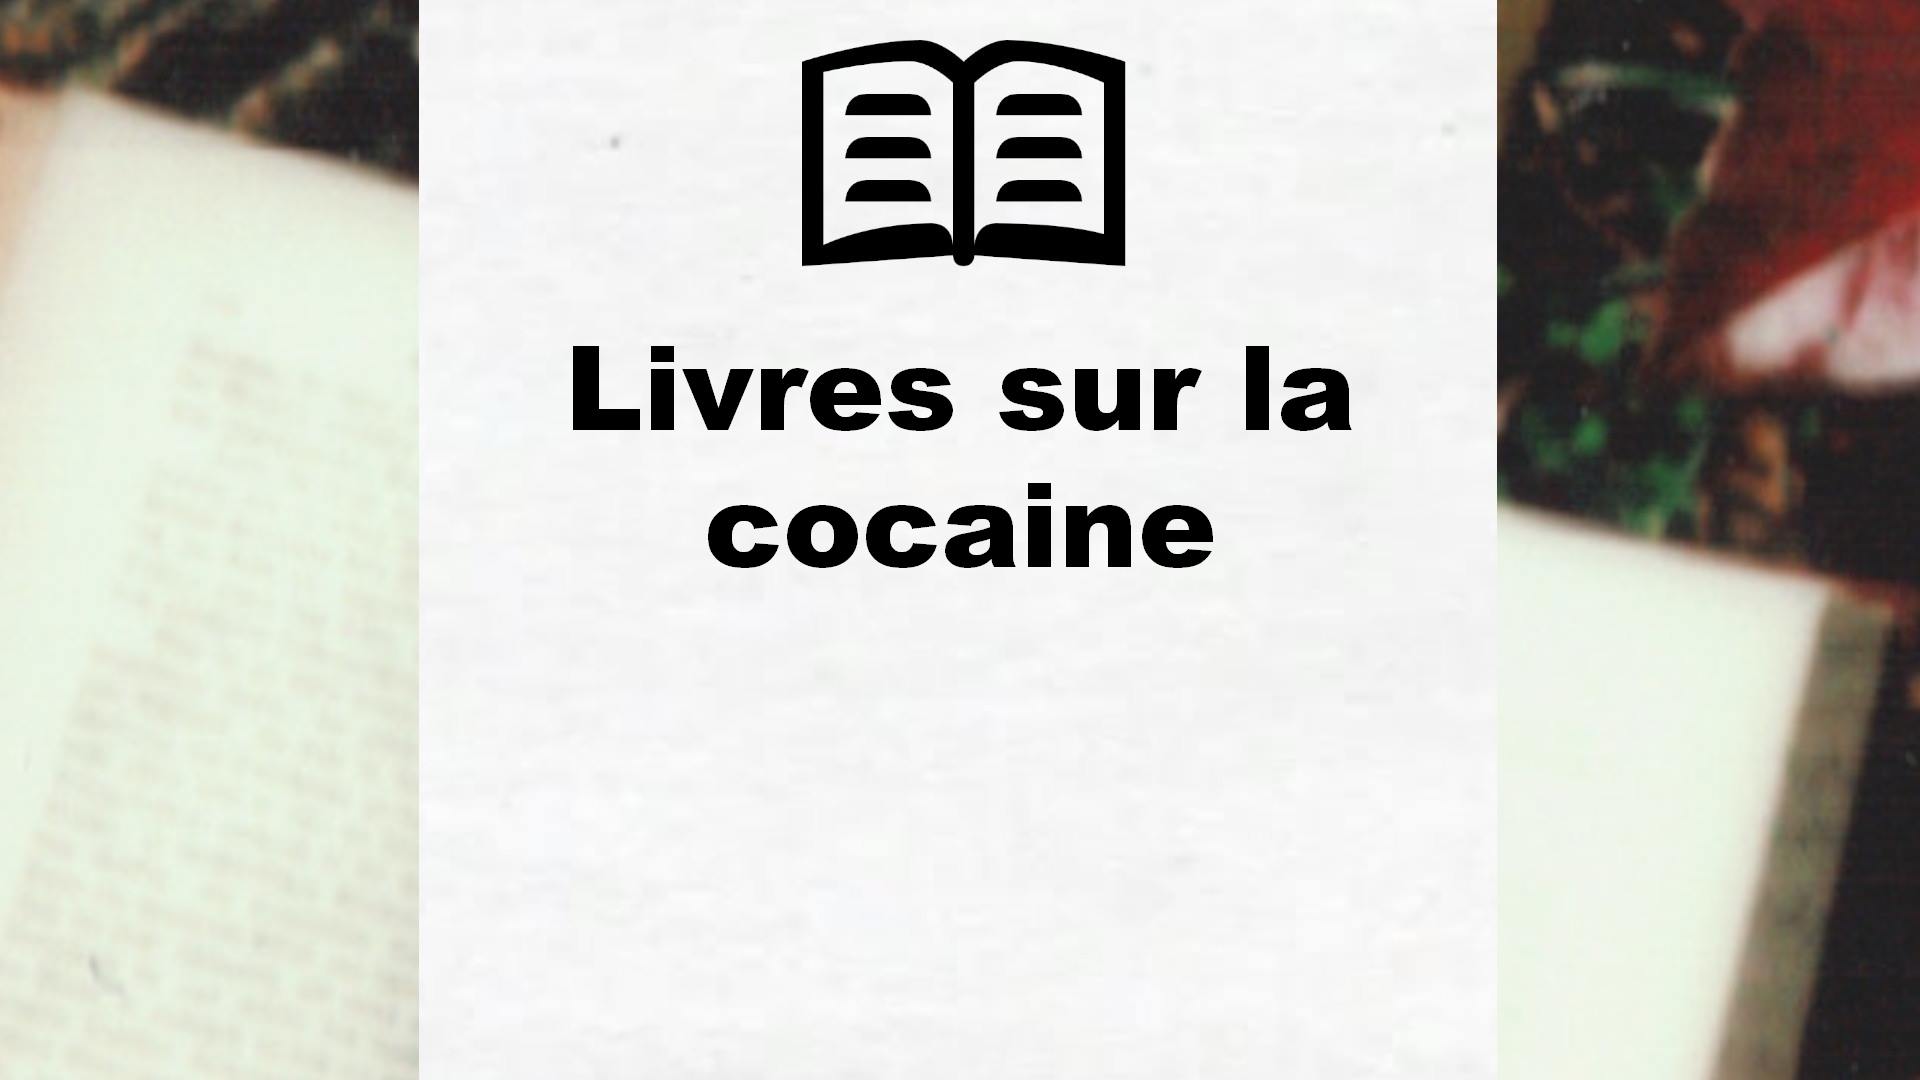 Livres sur la cocaine